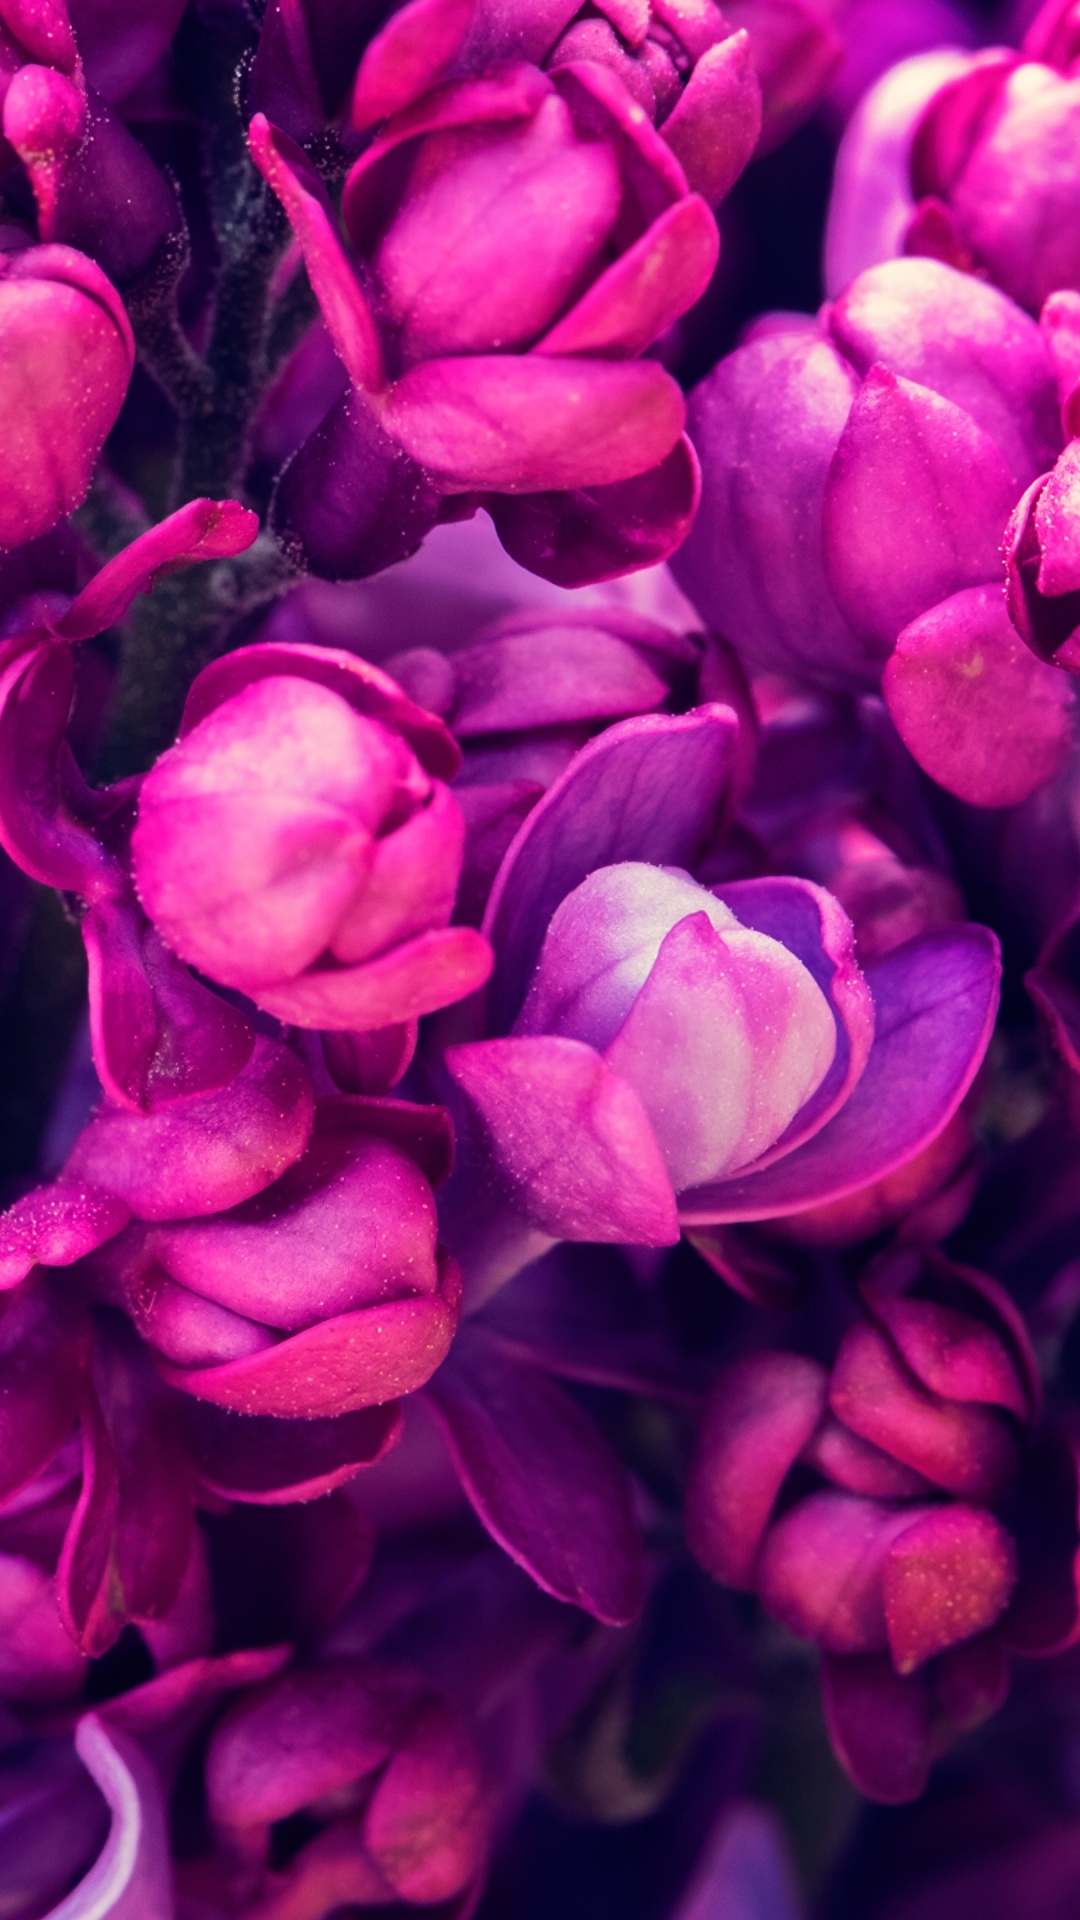 Purple Flowers in Macro Shot. Wallpaper in 1080x1920 Resolution